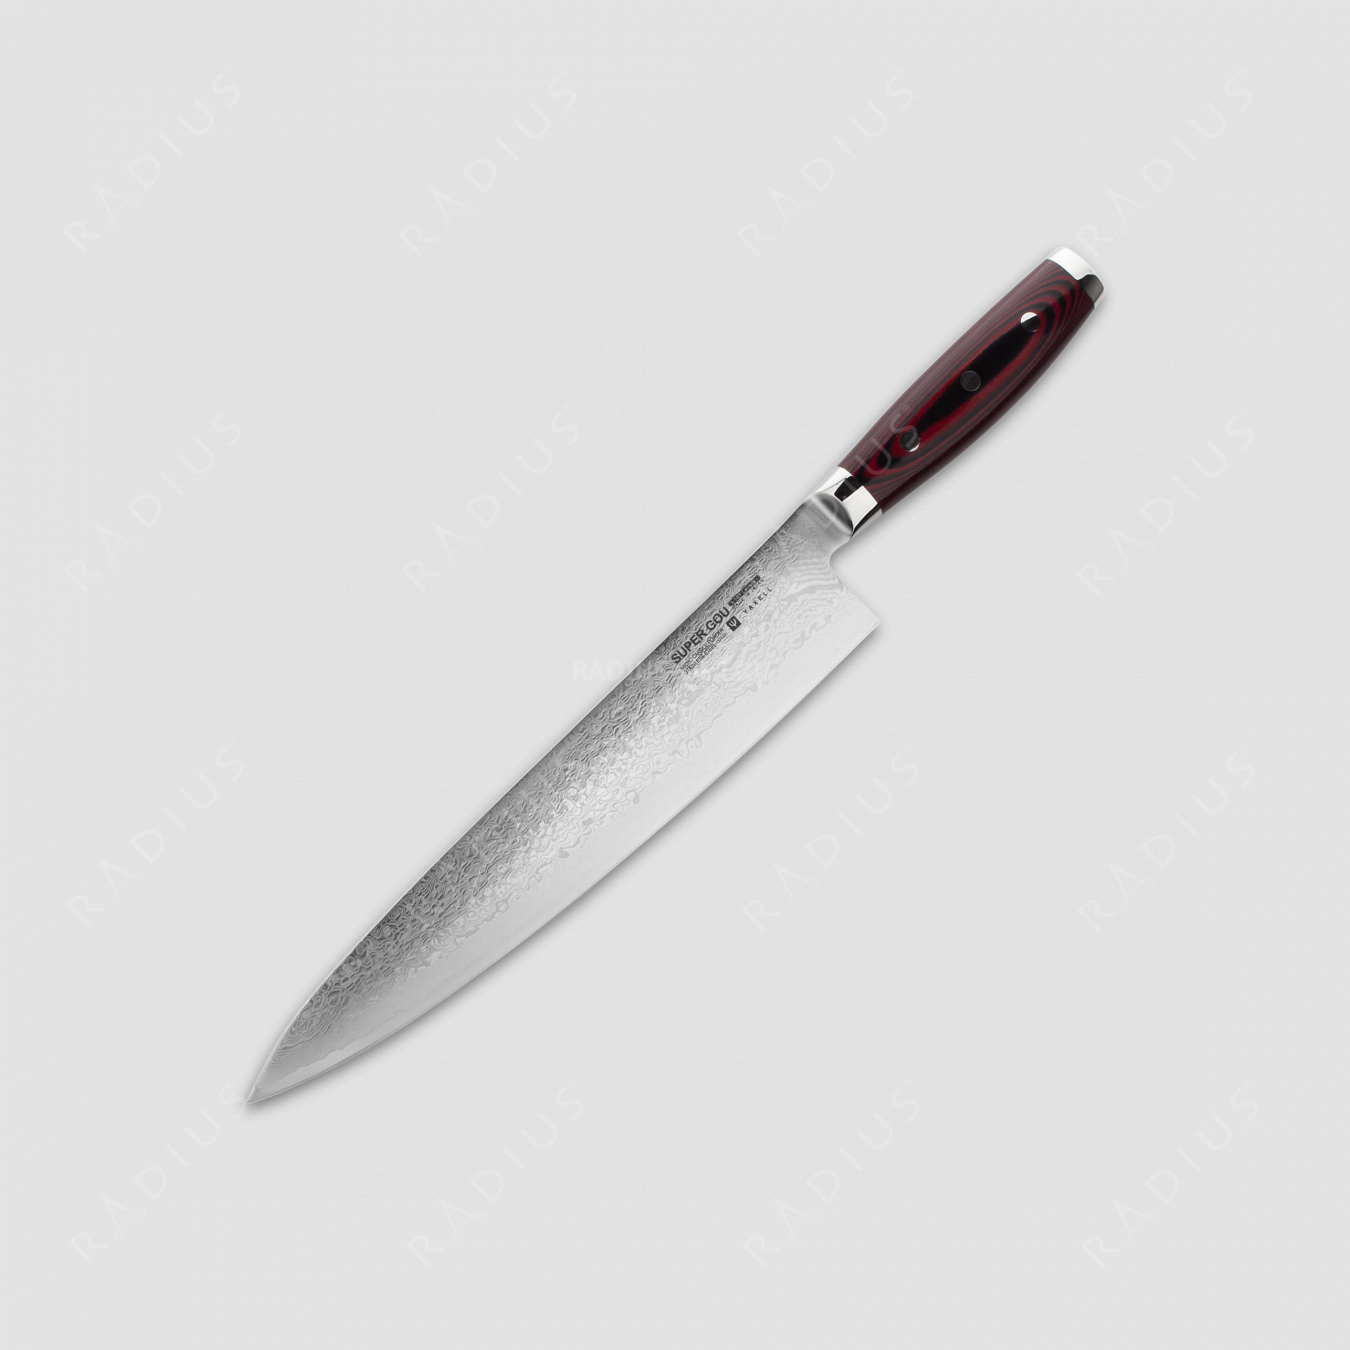 Профессиональный поварской кухонный нож 25 см, «Gyuto», дамасская сталь, серия GOU 161, YAXELL, Япония